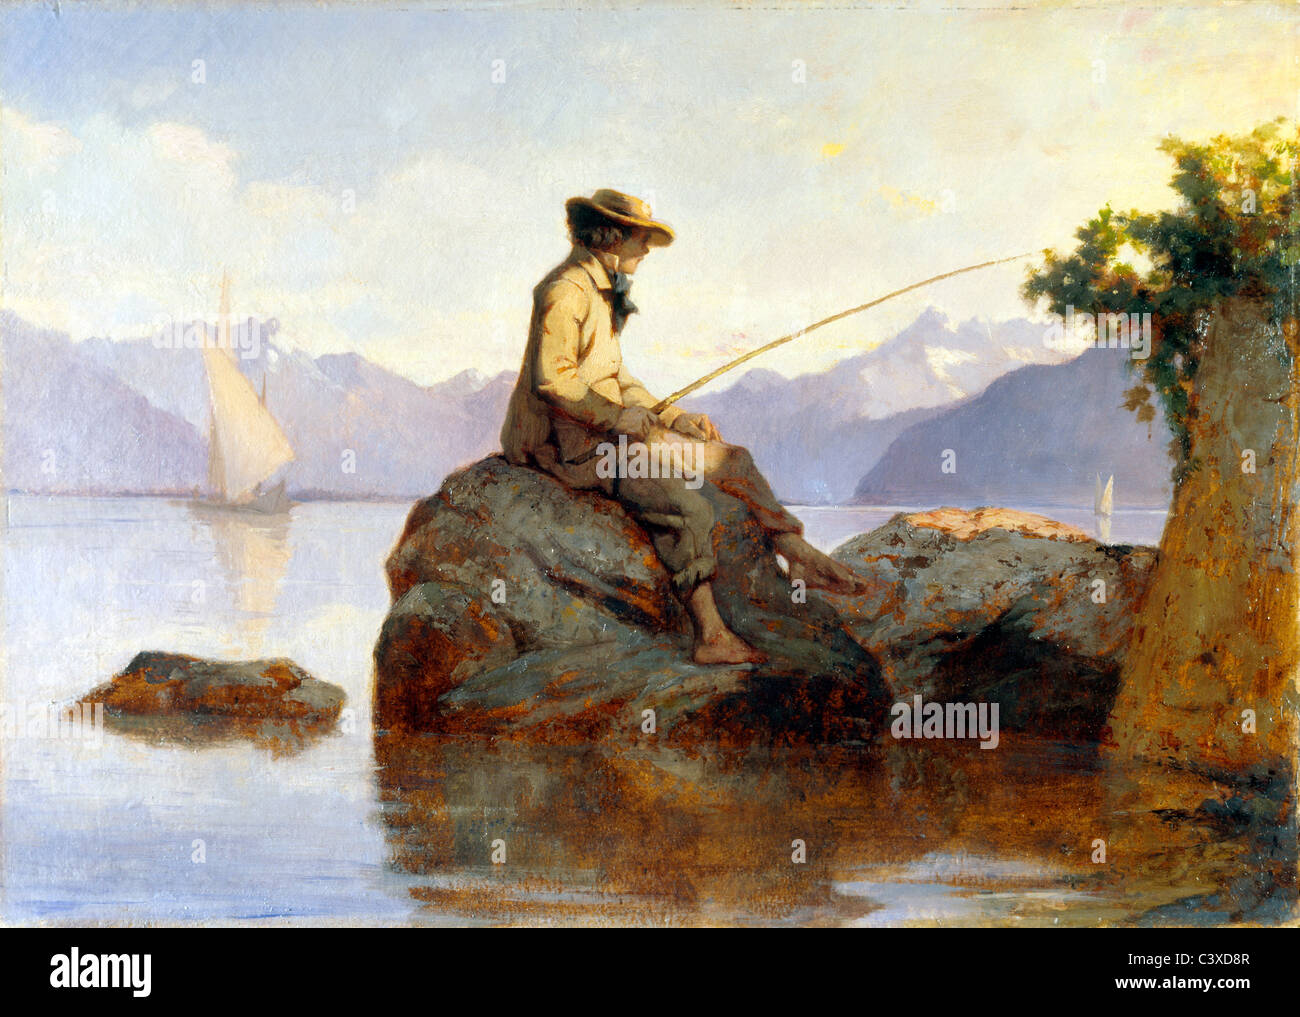 Peinture à l'huile d'un homme pêche, par Franþois Louis David Bocion. La Suisse, 19e siècle Banque D'Images